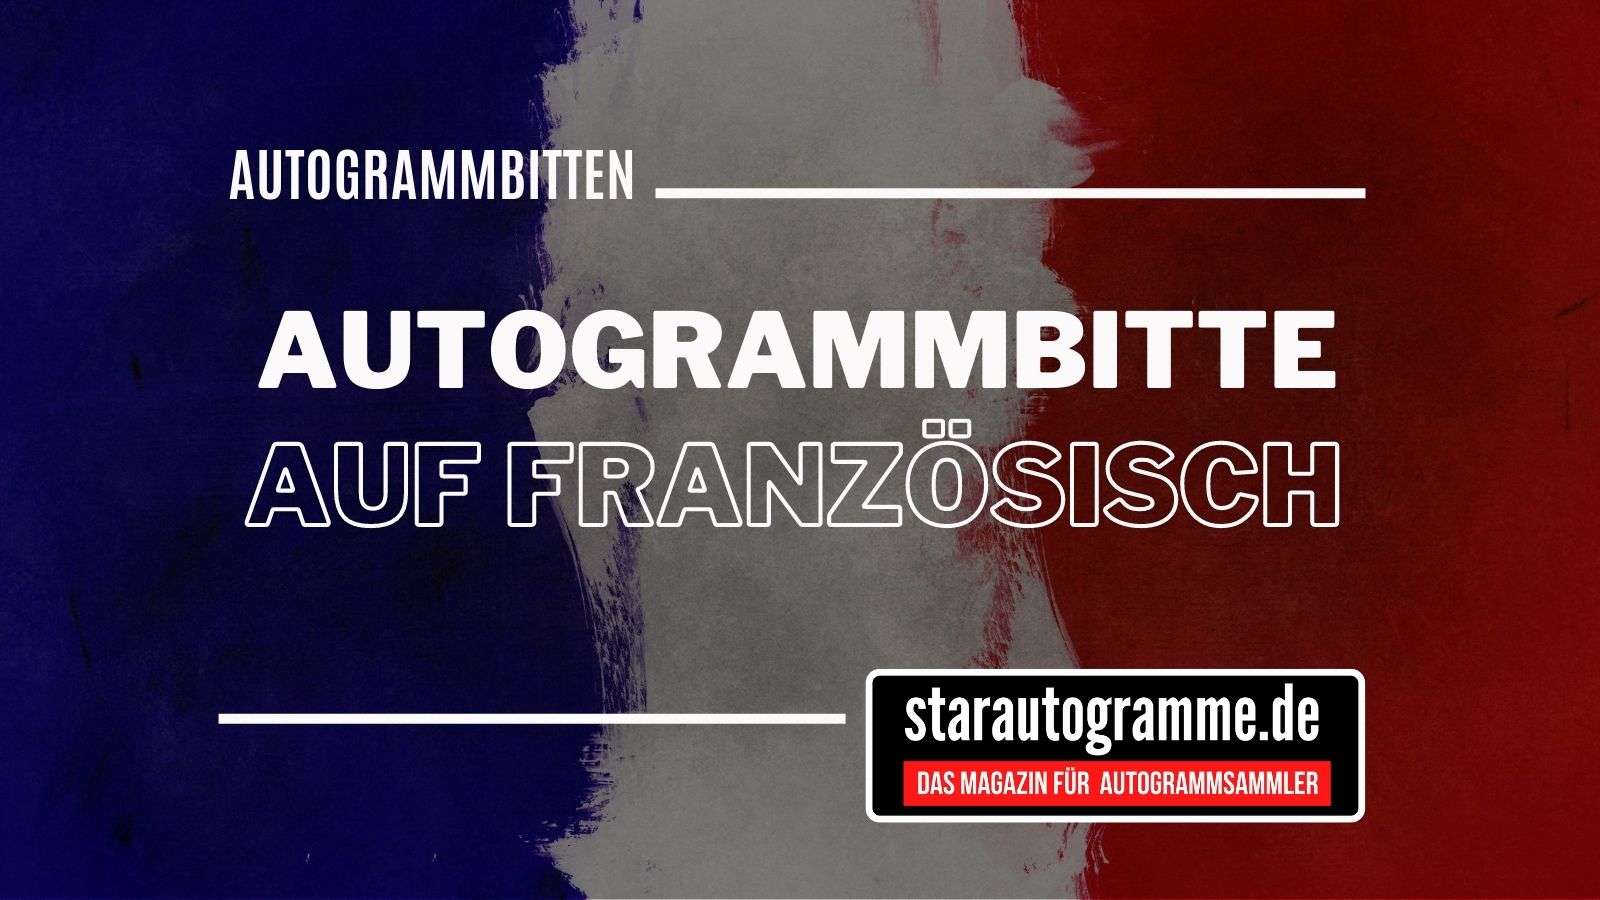 You are currently viewing Standardautogrammbitte Deutsch-Französisch